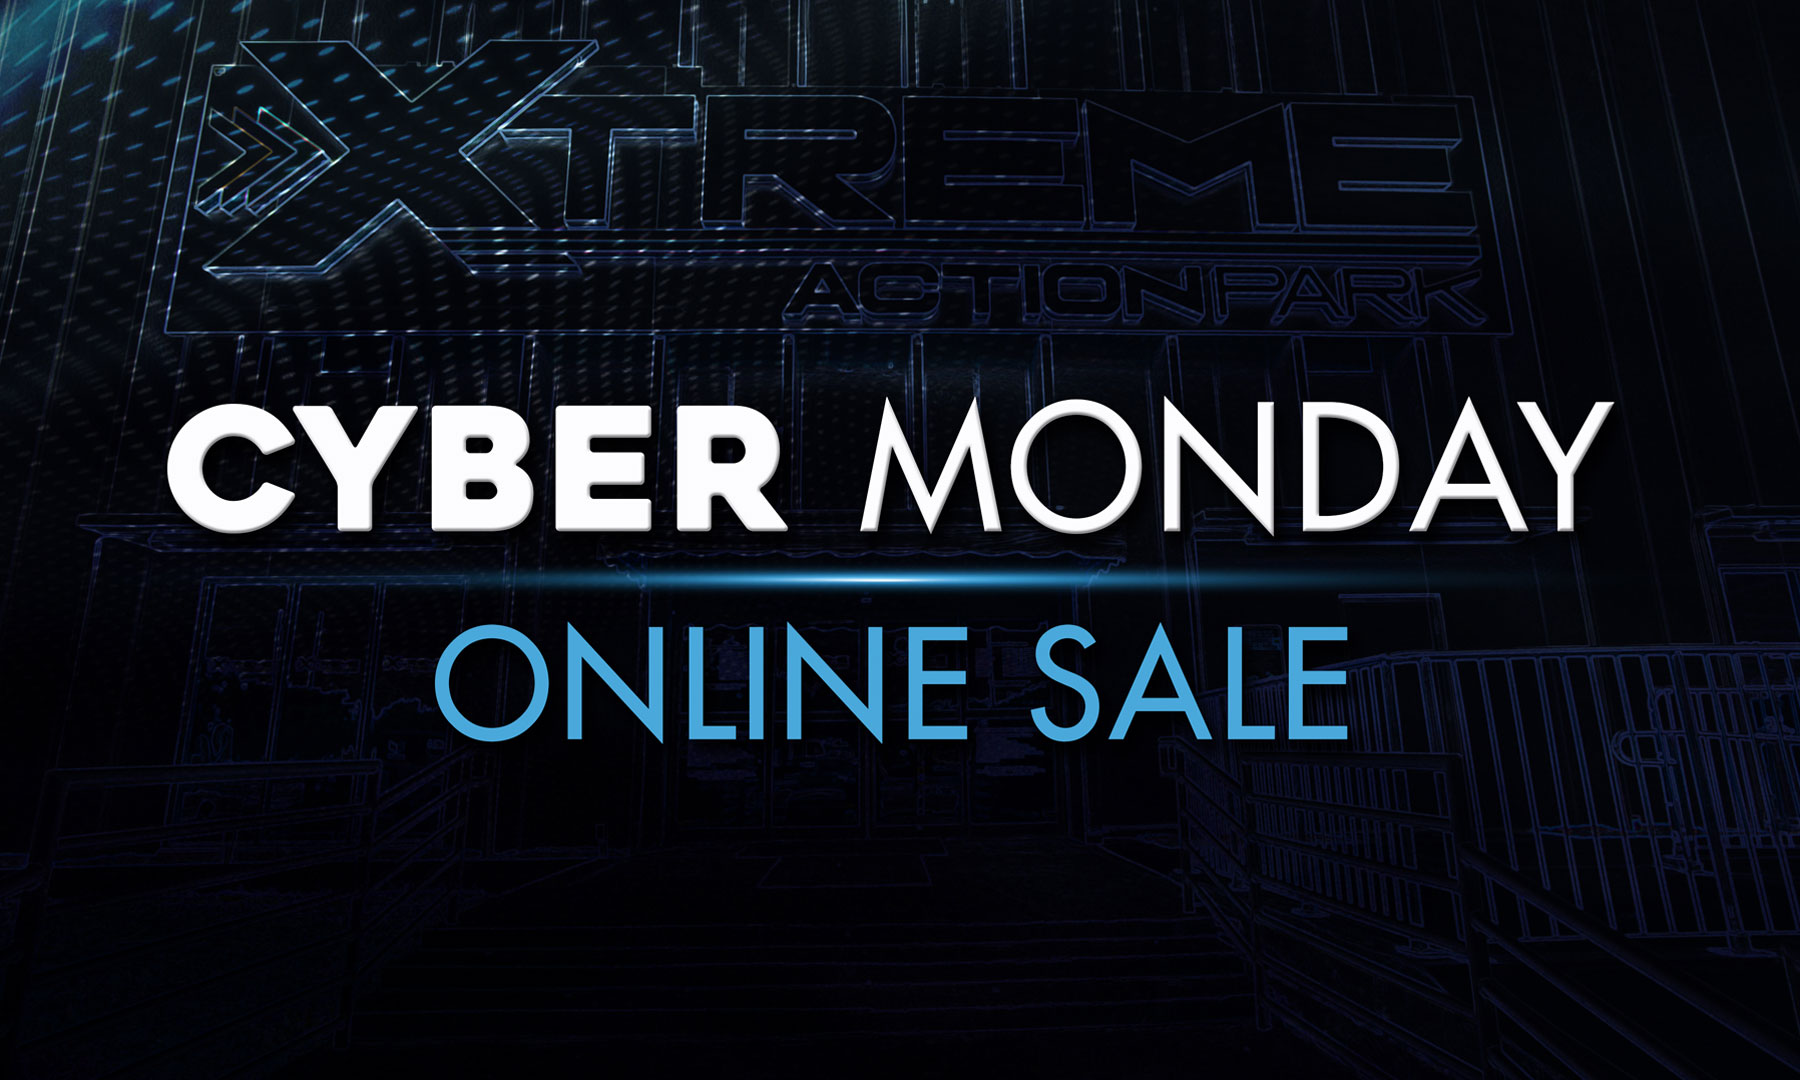 Cyber Monday Sale 2017 Xtreme Action Park